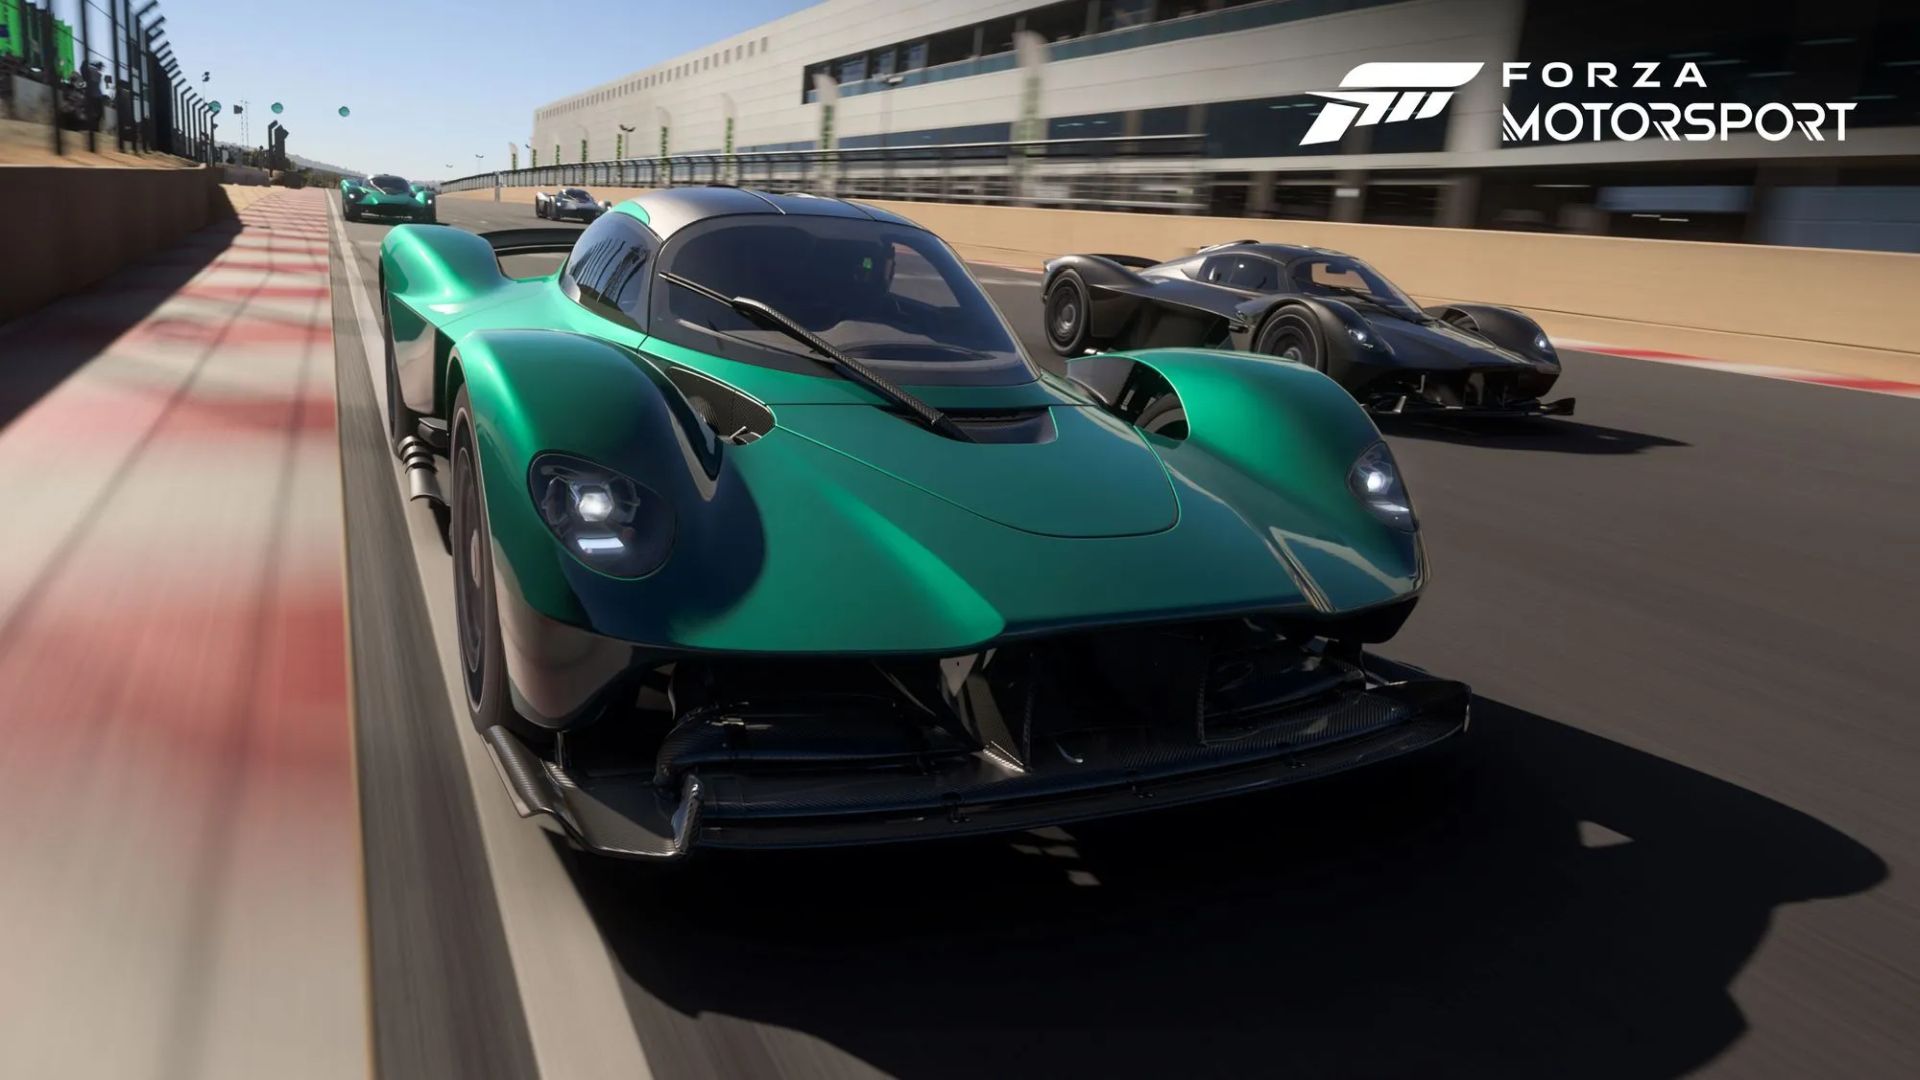 Forza Motorsport – Nordschleife arrive en février avec la mise à jour 5